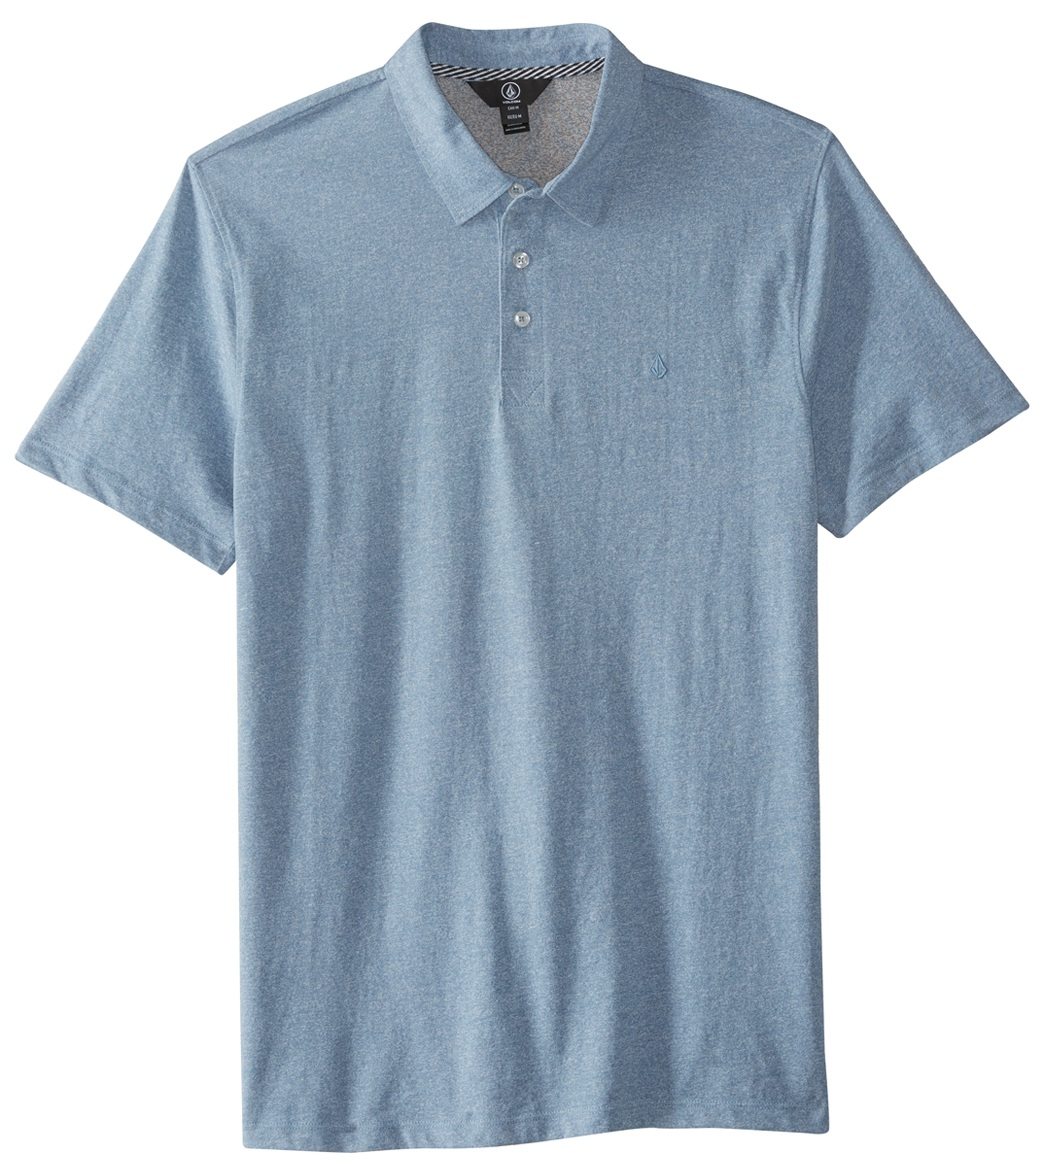 Volcom Men's Wowzer Short Sleeve Polo Shirt - Wrecked Indigo X-Small Cotton/Polyester - Swimoutlet.com